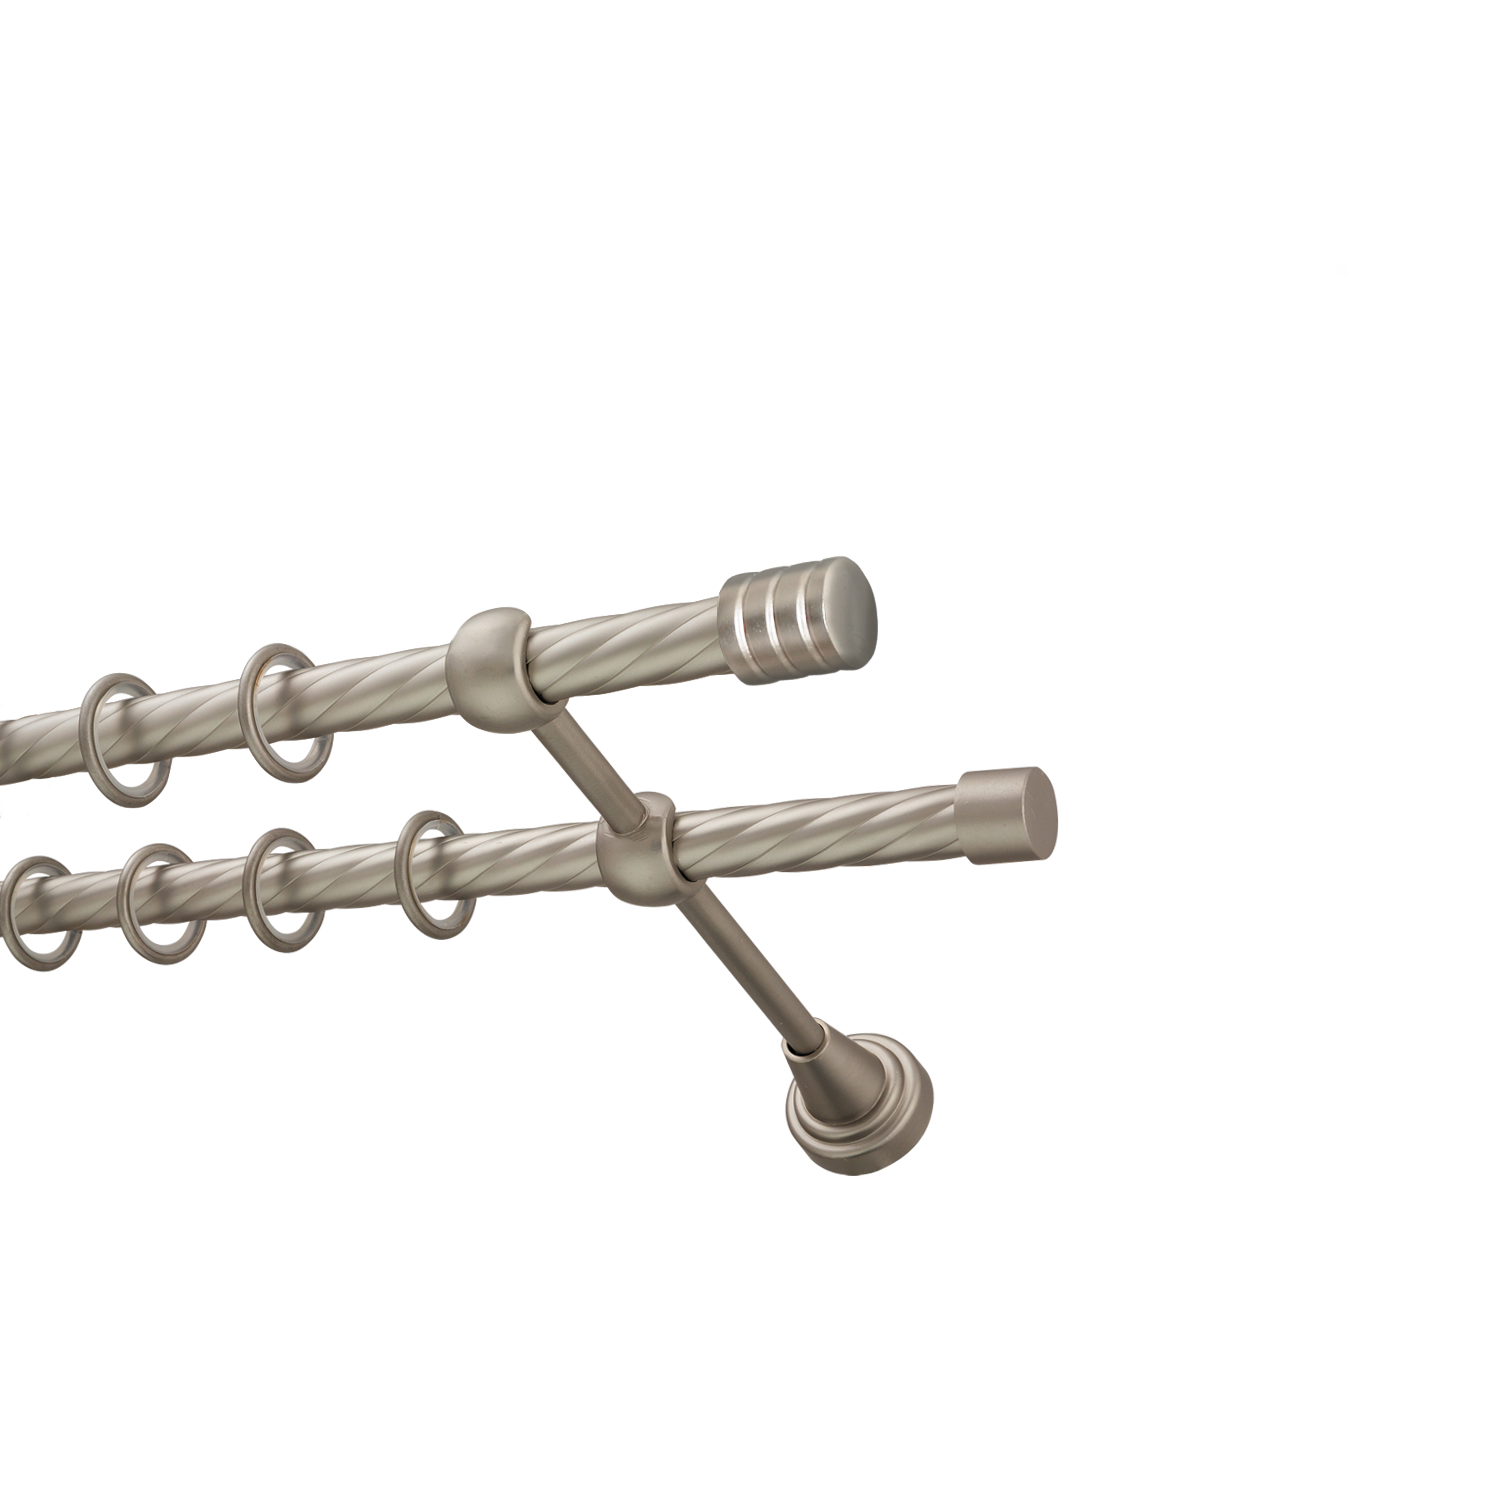 Металлический карниз для штор Подиум, двухрядный 16/16 мм, сталь, витая штанга, длина 140 см - фото Wikidecor.ru